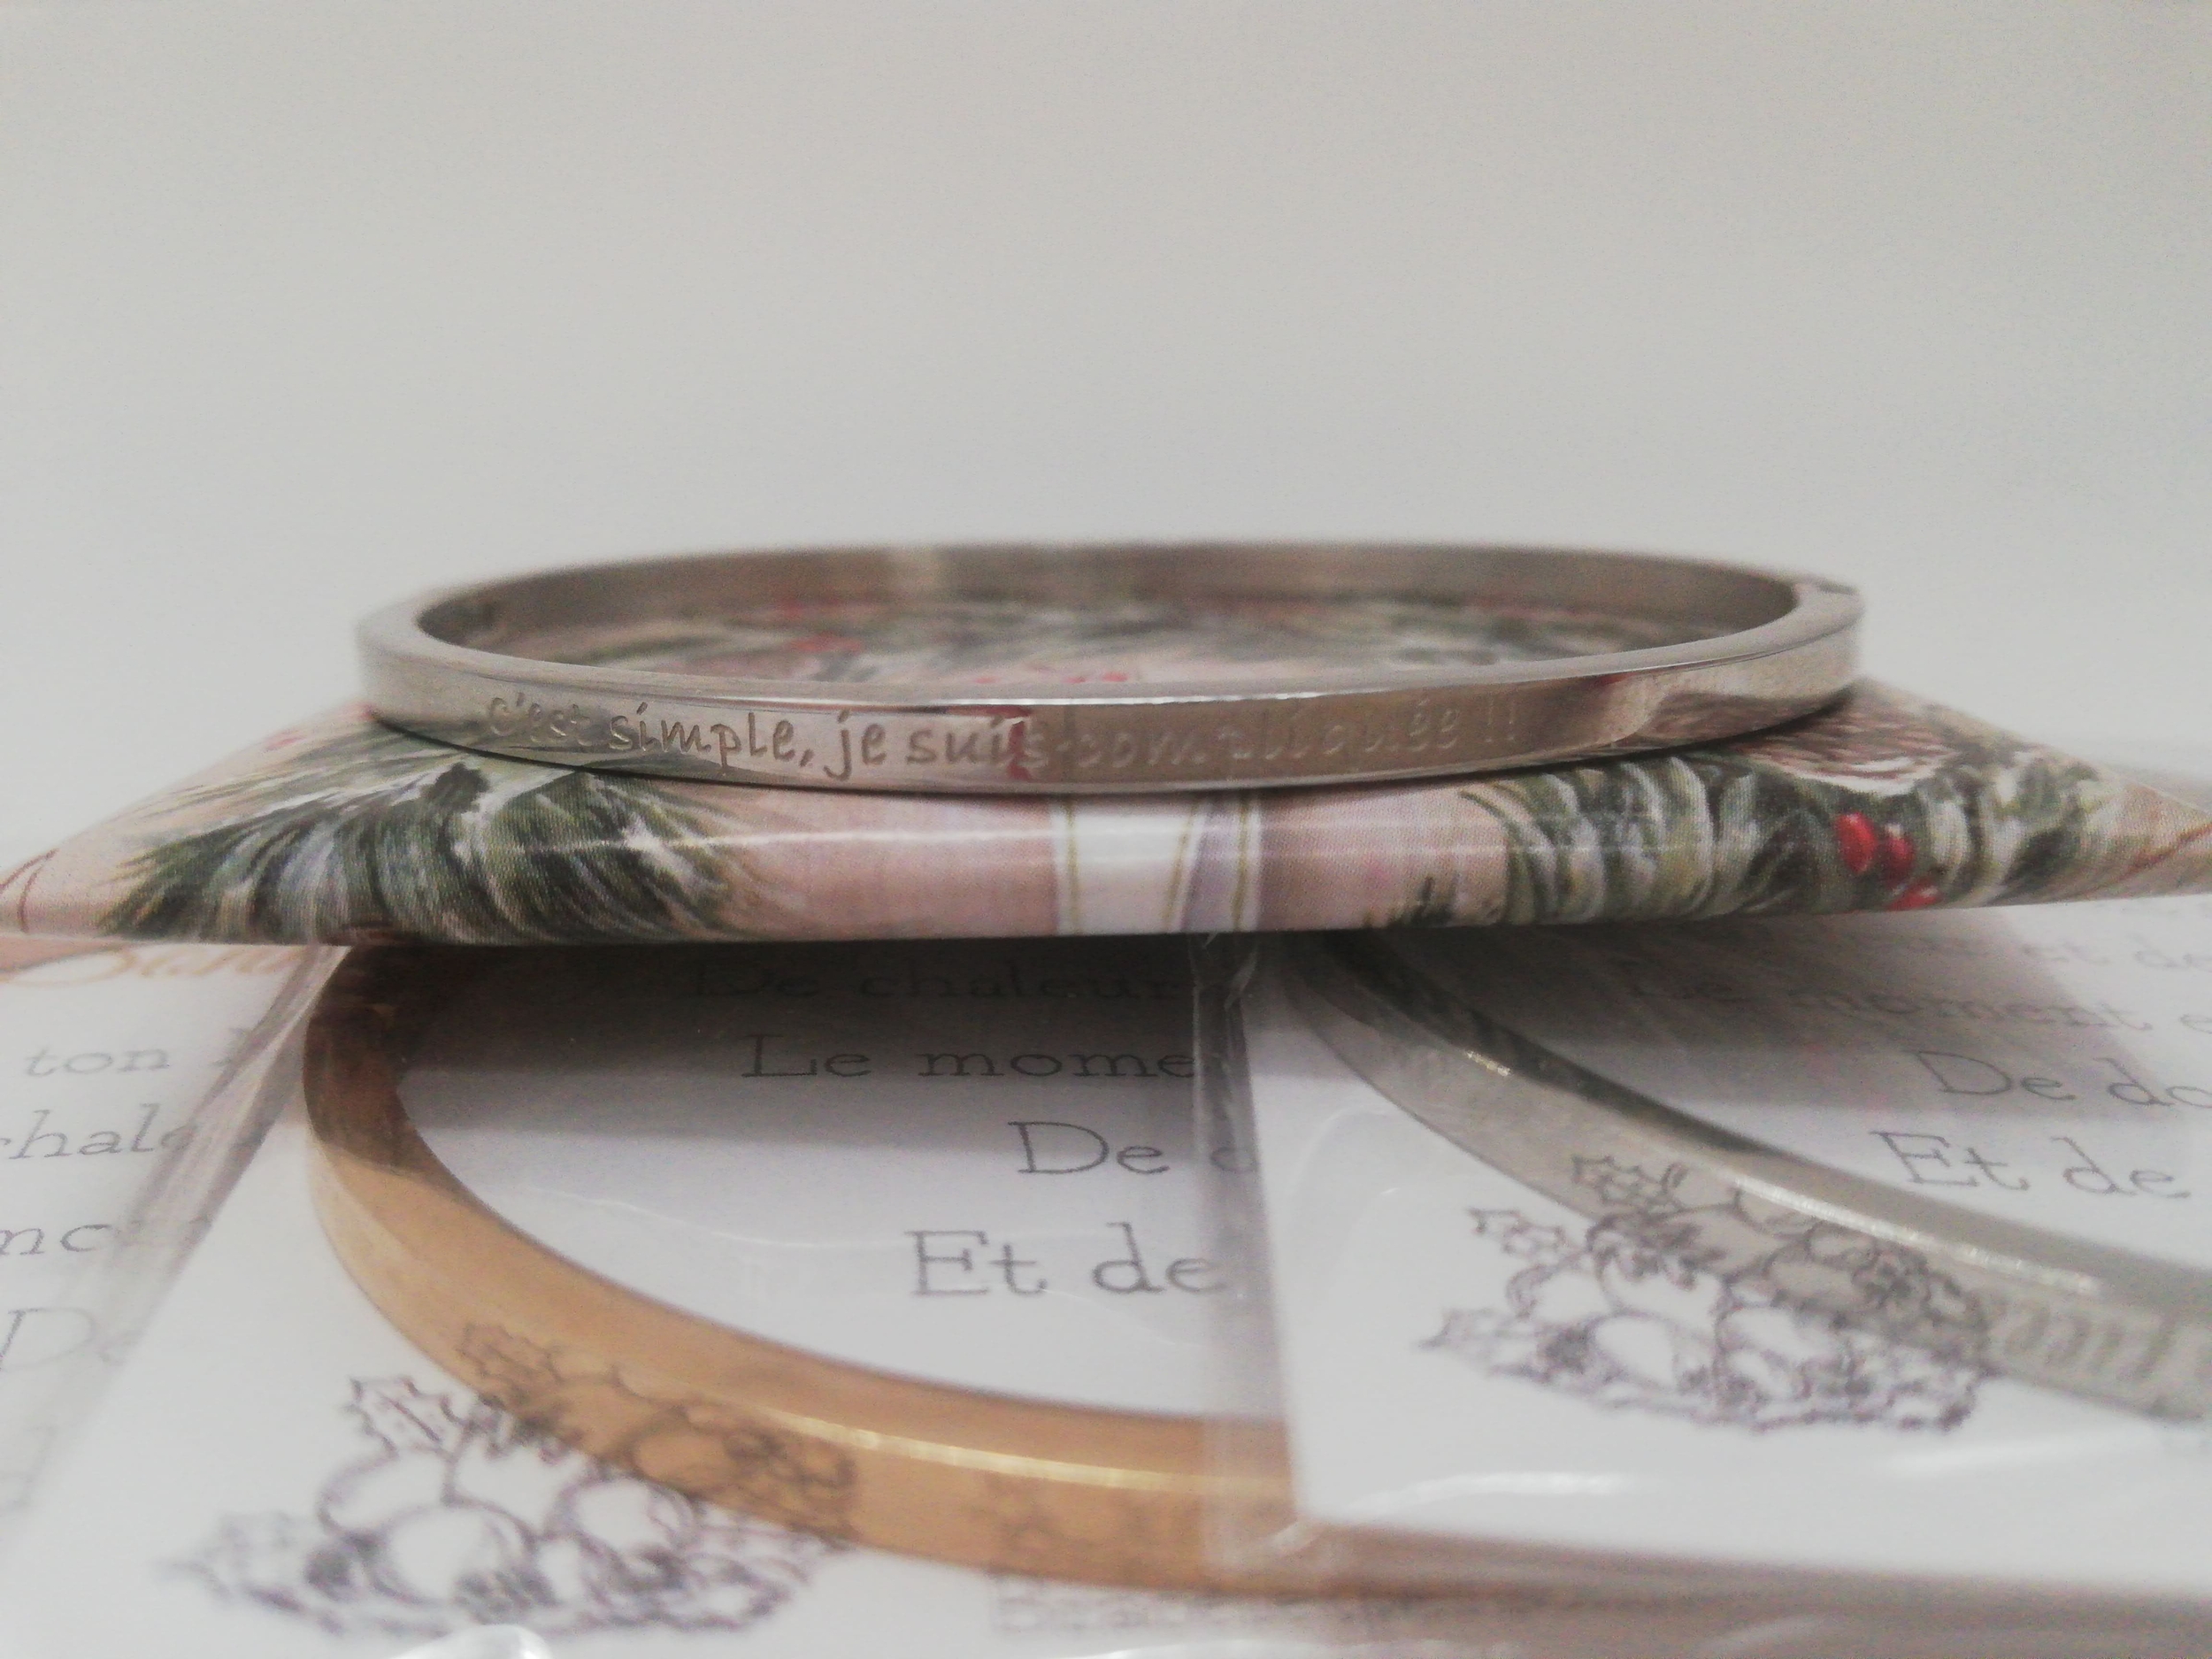 petit-cadeau-original-noel-bracelet-personnalise-c-est-simple-je-suis-compliquee